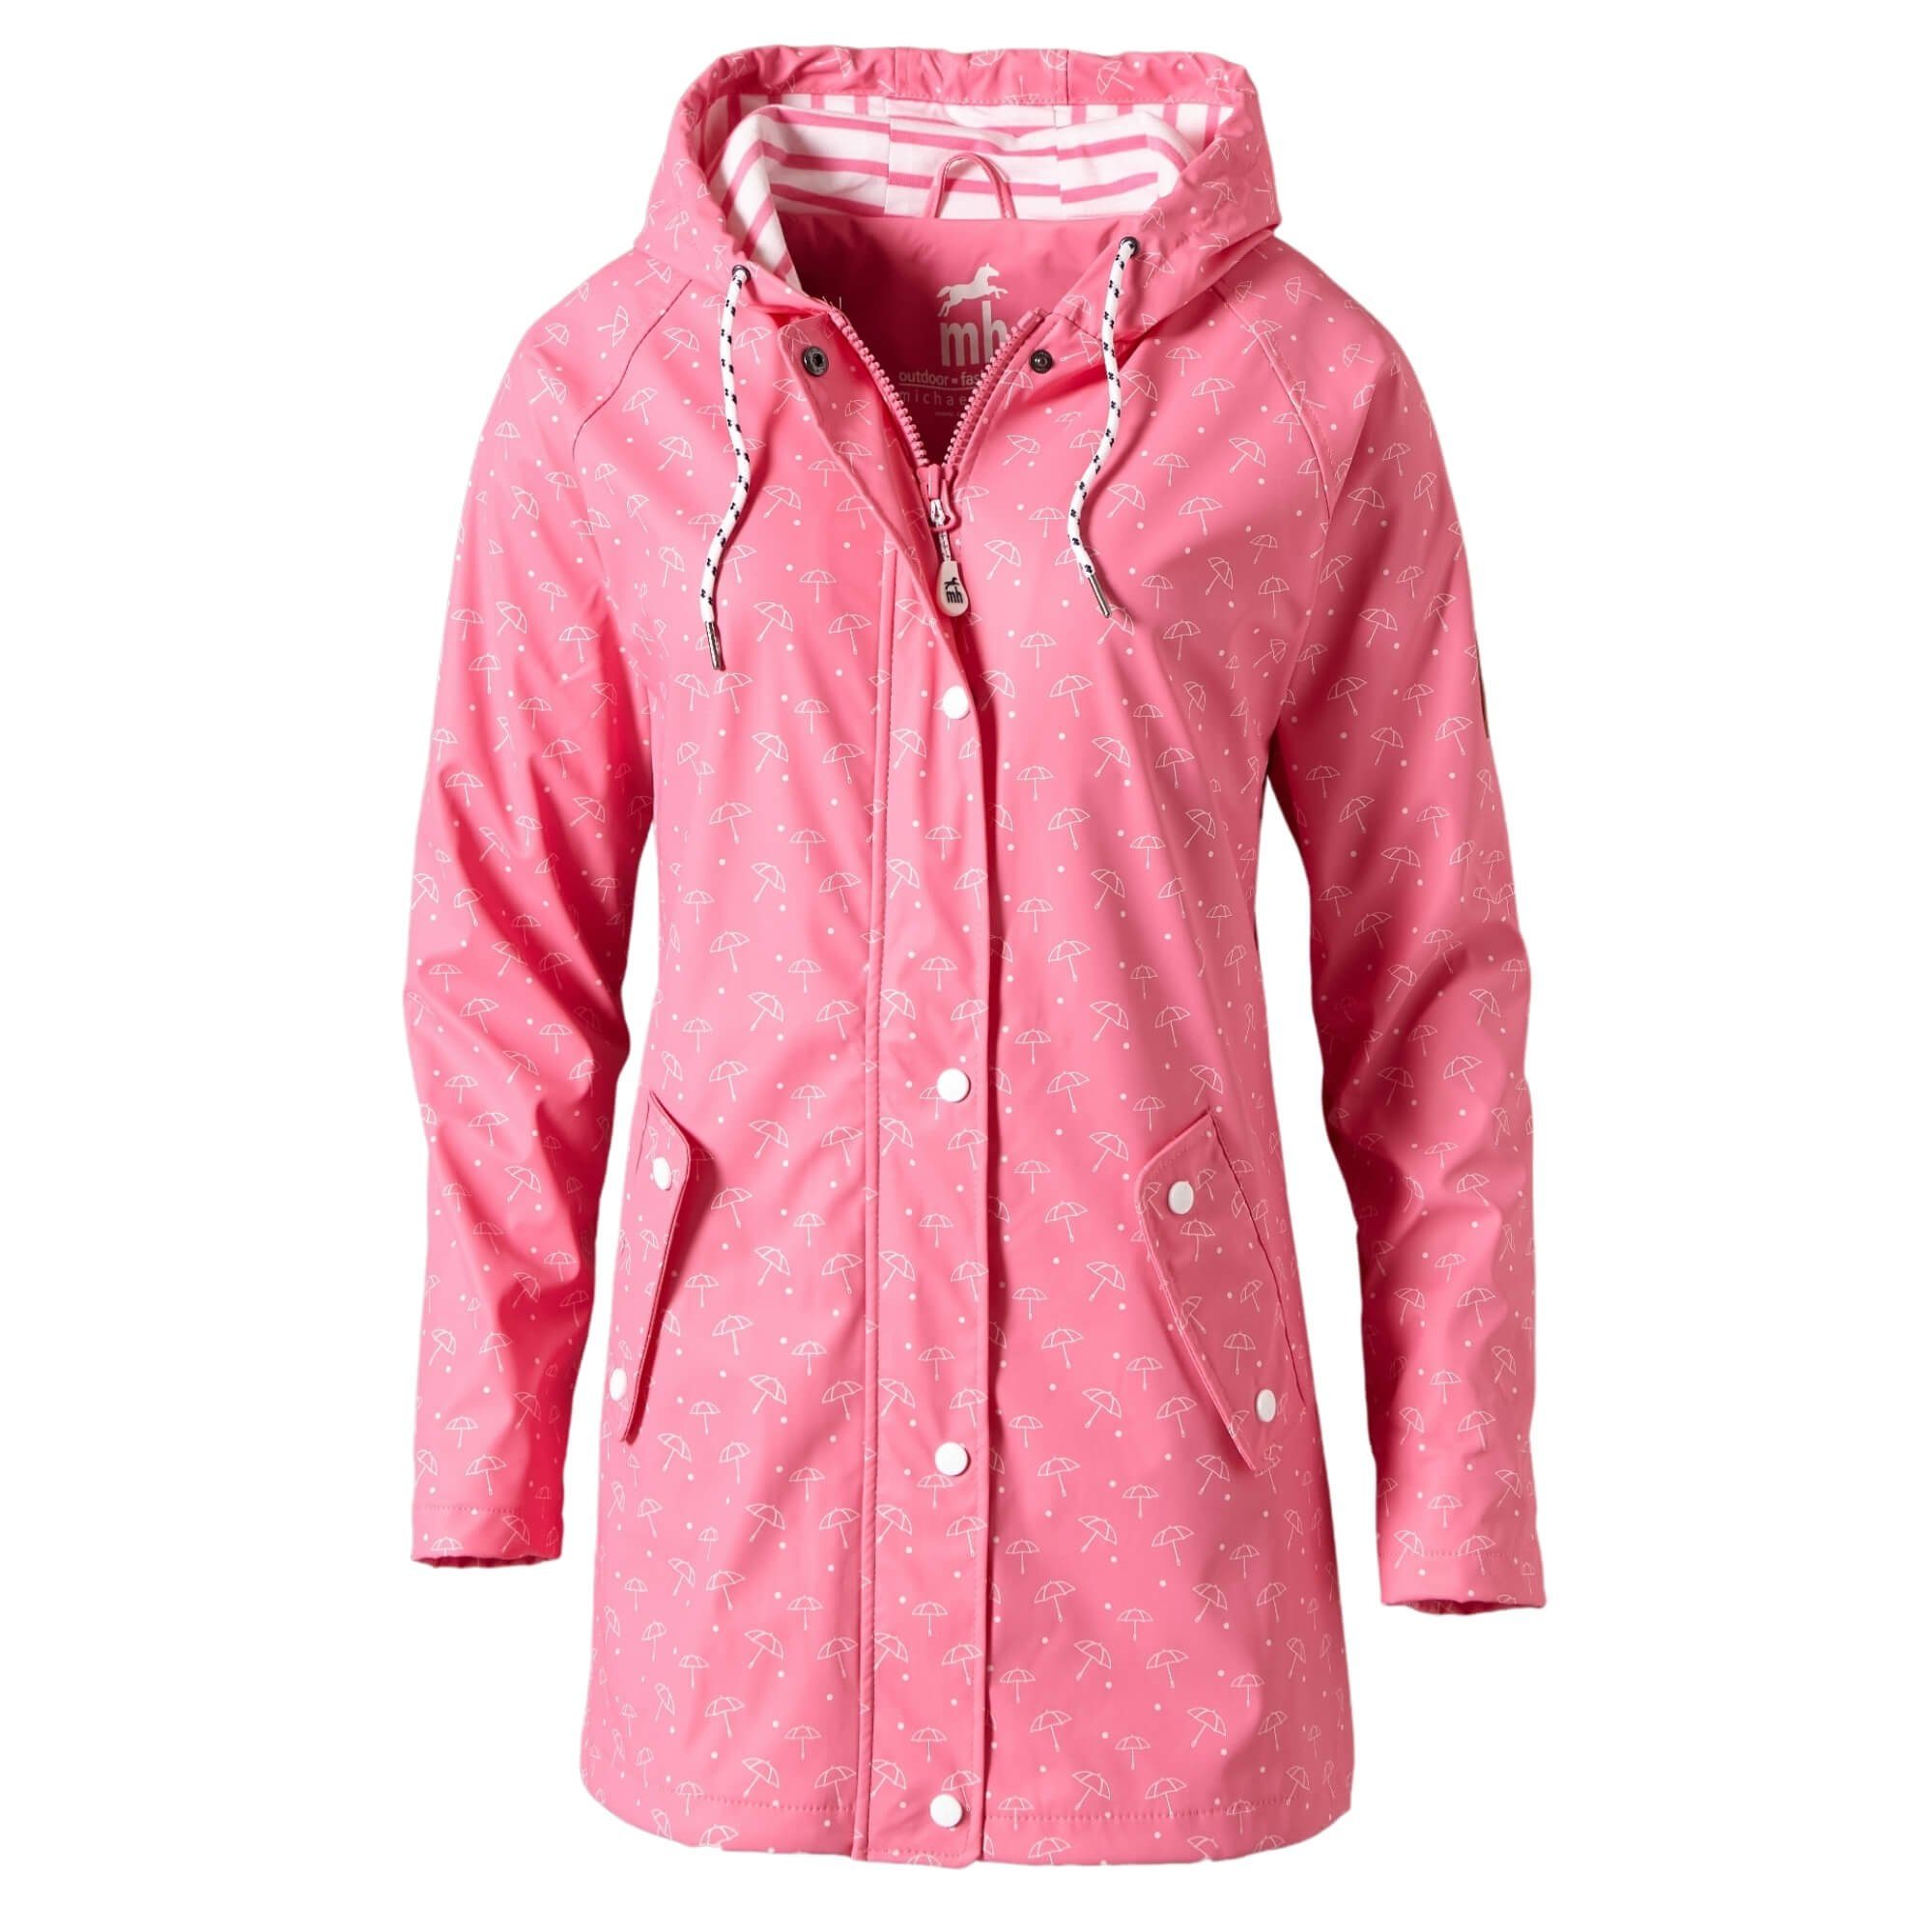 Rosa Regenjacken für Damen kaufen » Pinke Regenjacken | OTTO